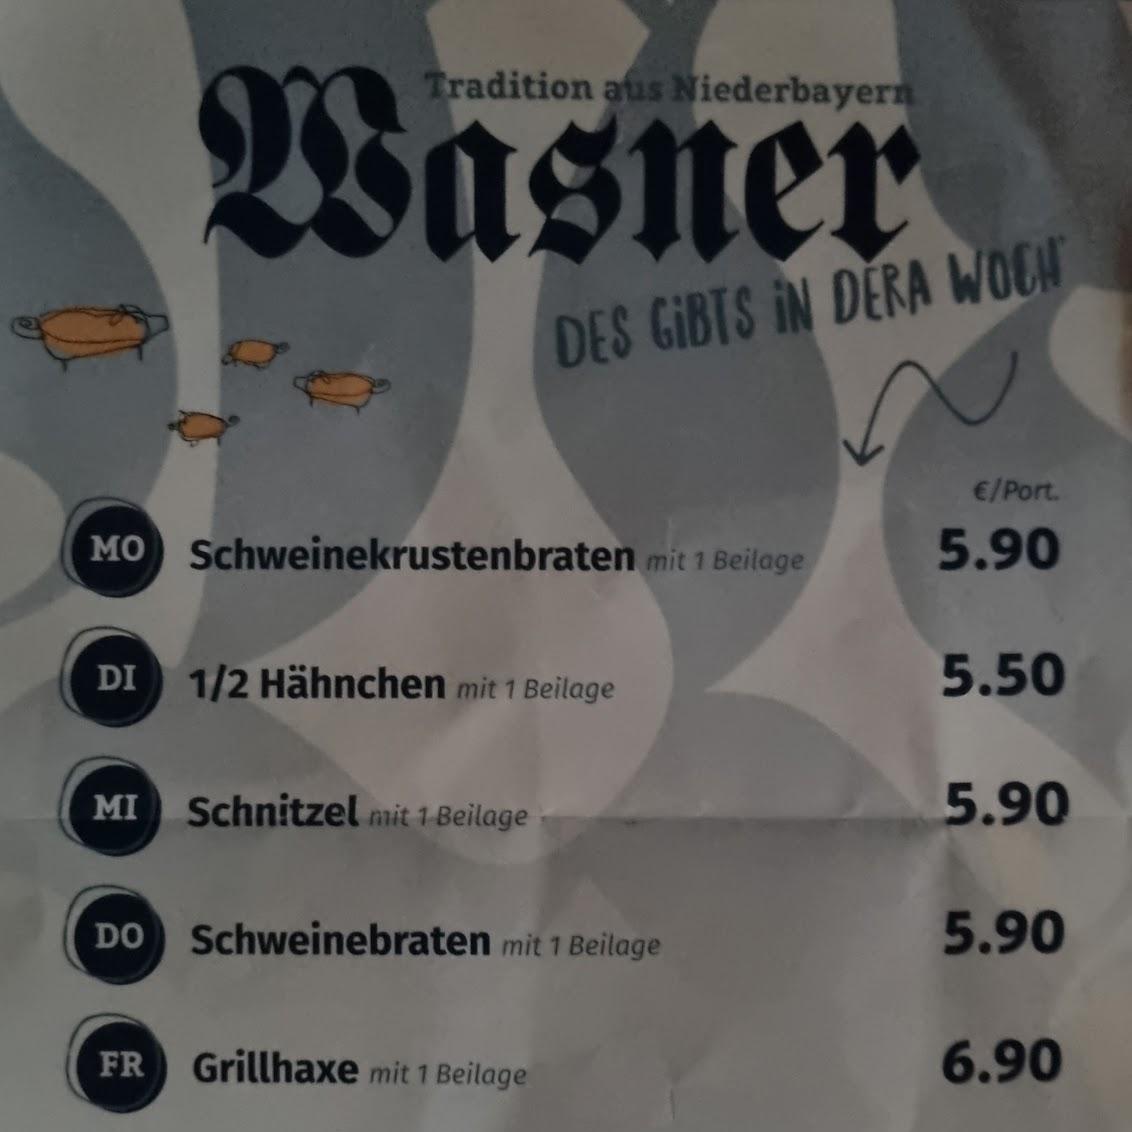 Restaurant "Wasner Wirt im Kaufland" in Straubing